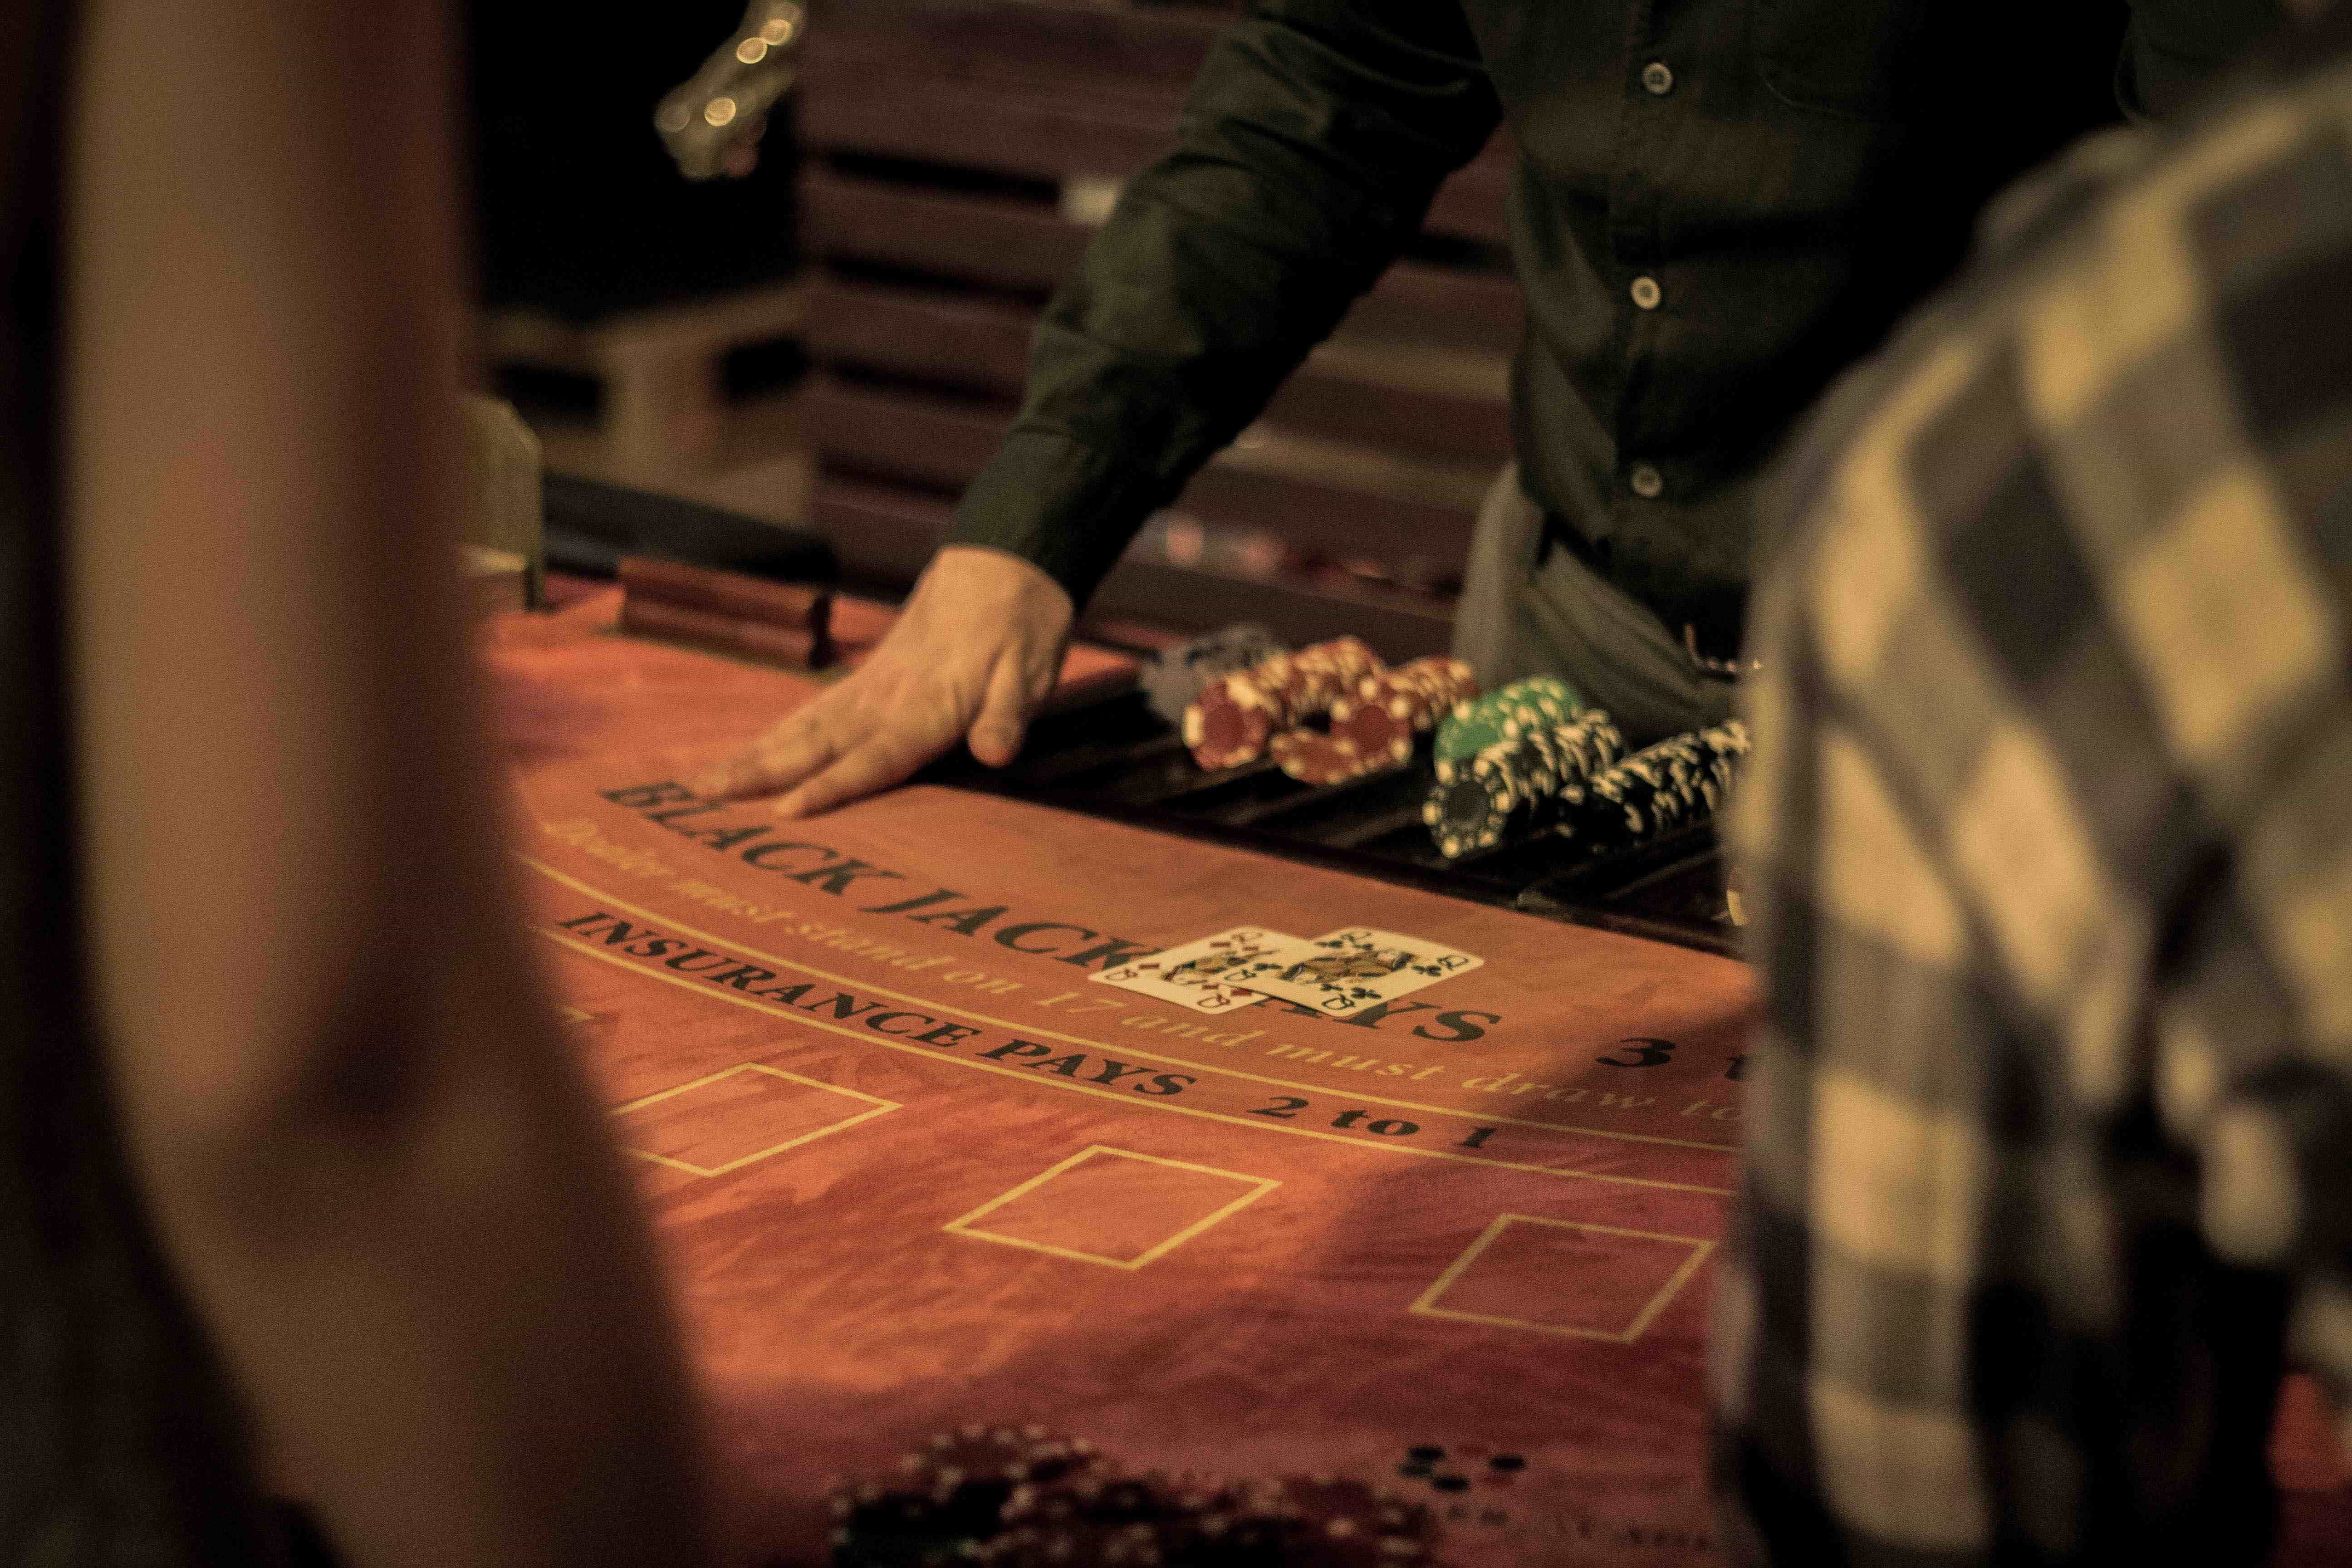 Ein Live-Dealer steht am Blackjack-Tisch im schwarzen Hemd vor einigen Jetons und ist dabei, Karten auszugeben.